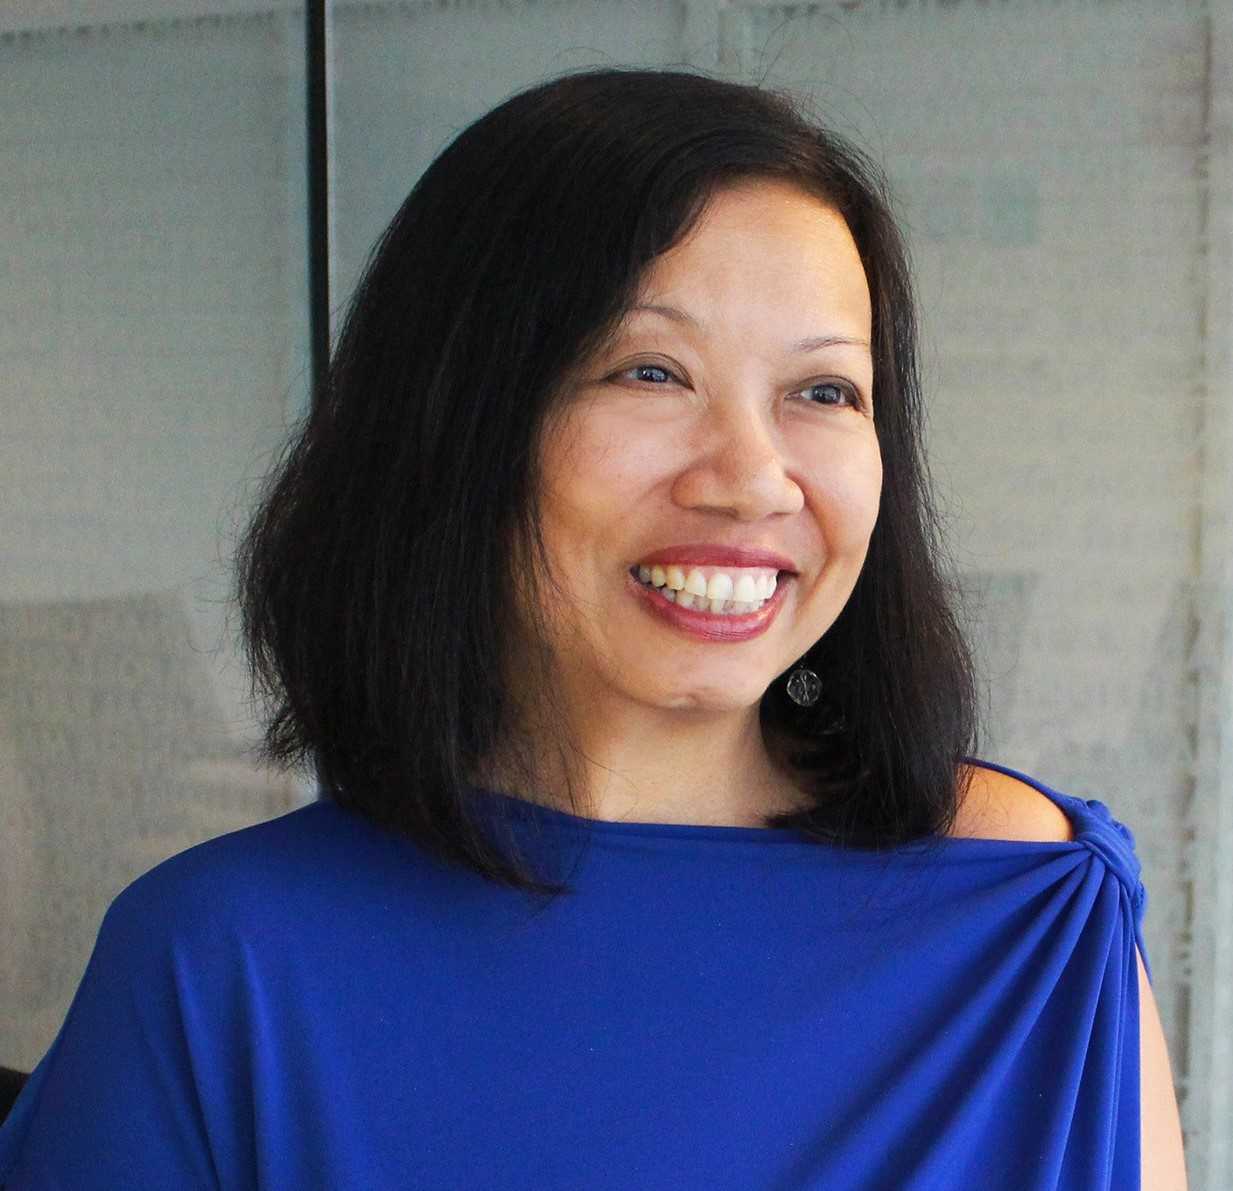 Bernadette Chua